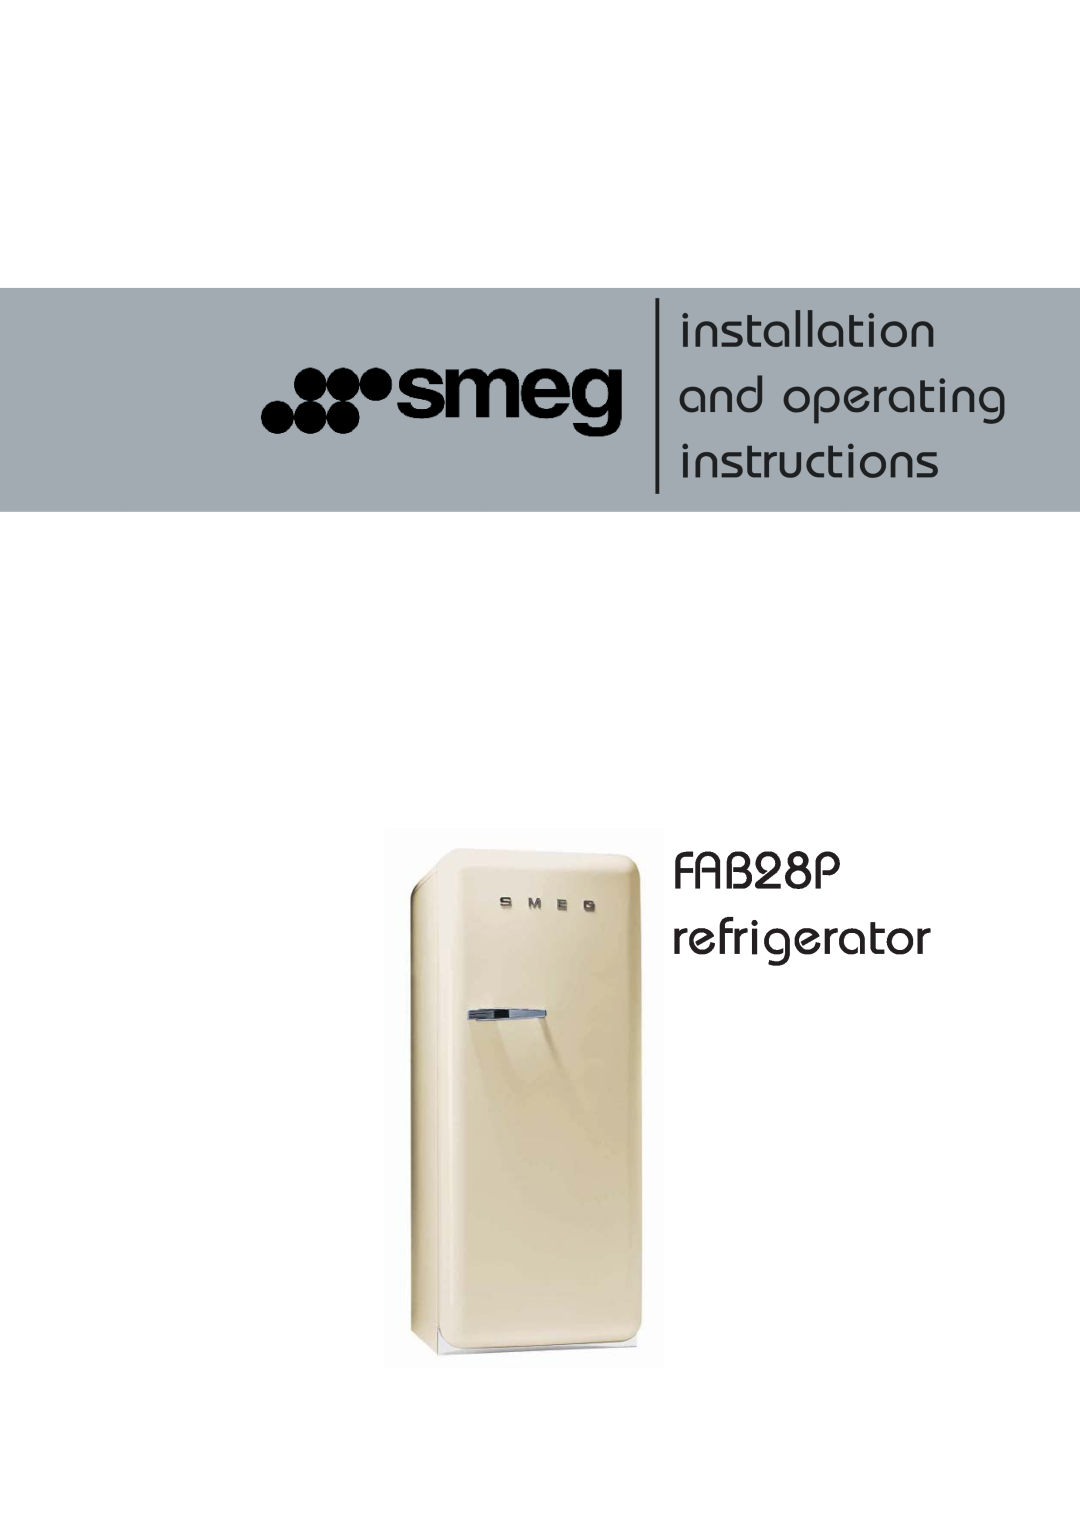 Smeg fab28p, smeg refrigerator manual installation and operating instructions, FAB28P refrigerator 